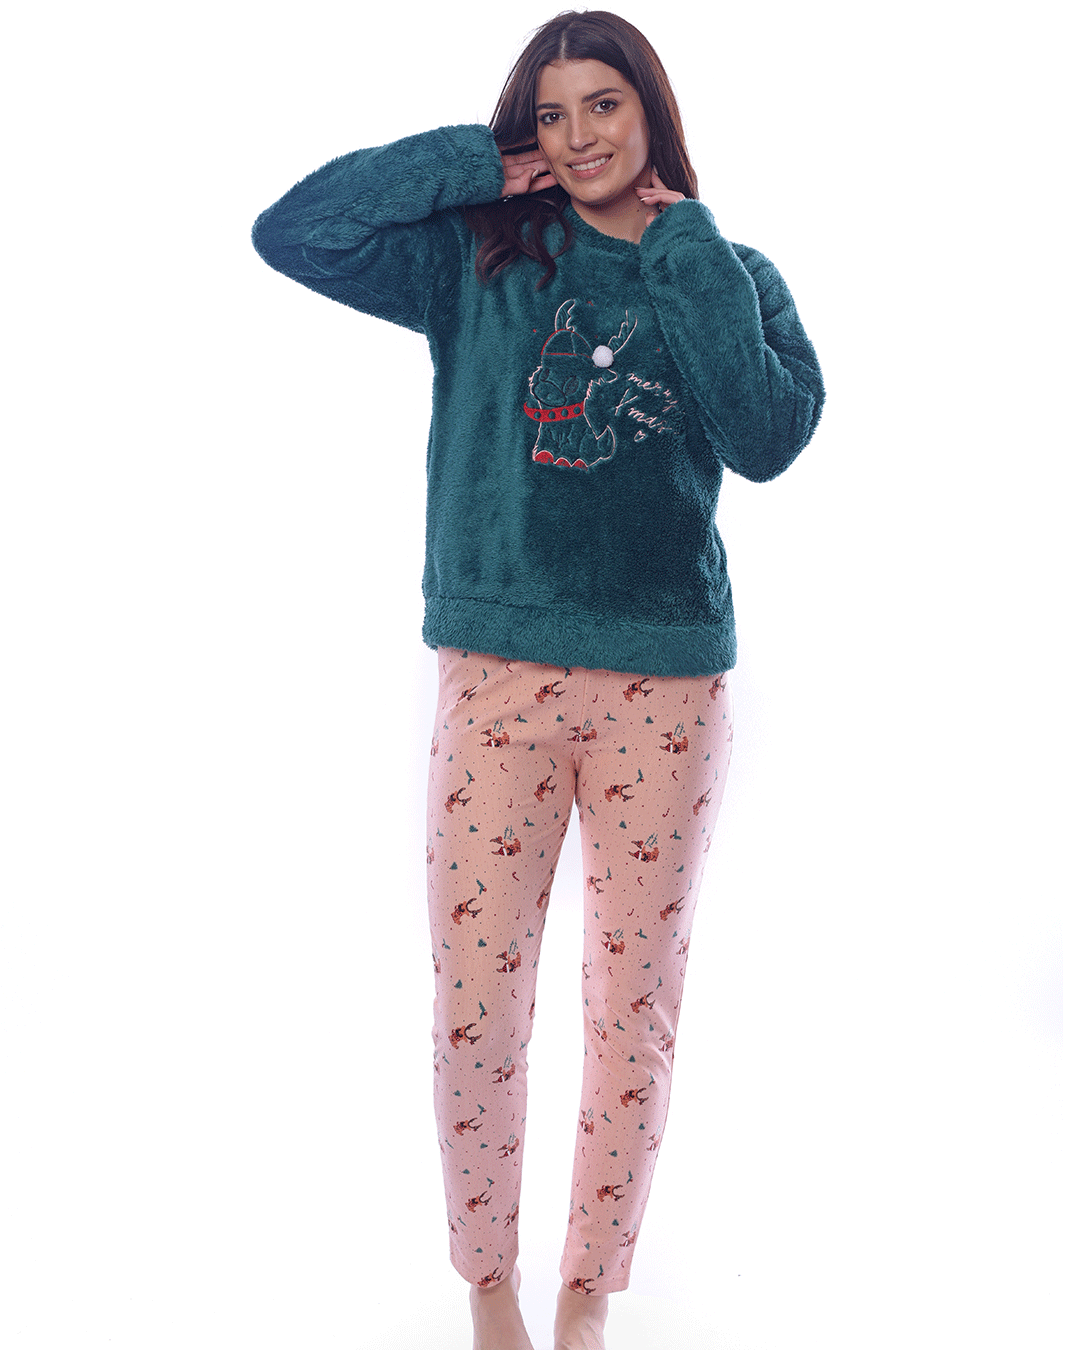 Polar women's pajamas with embroidered unicorn – 2segypt